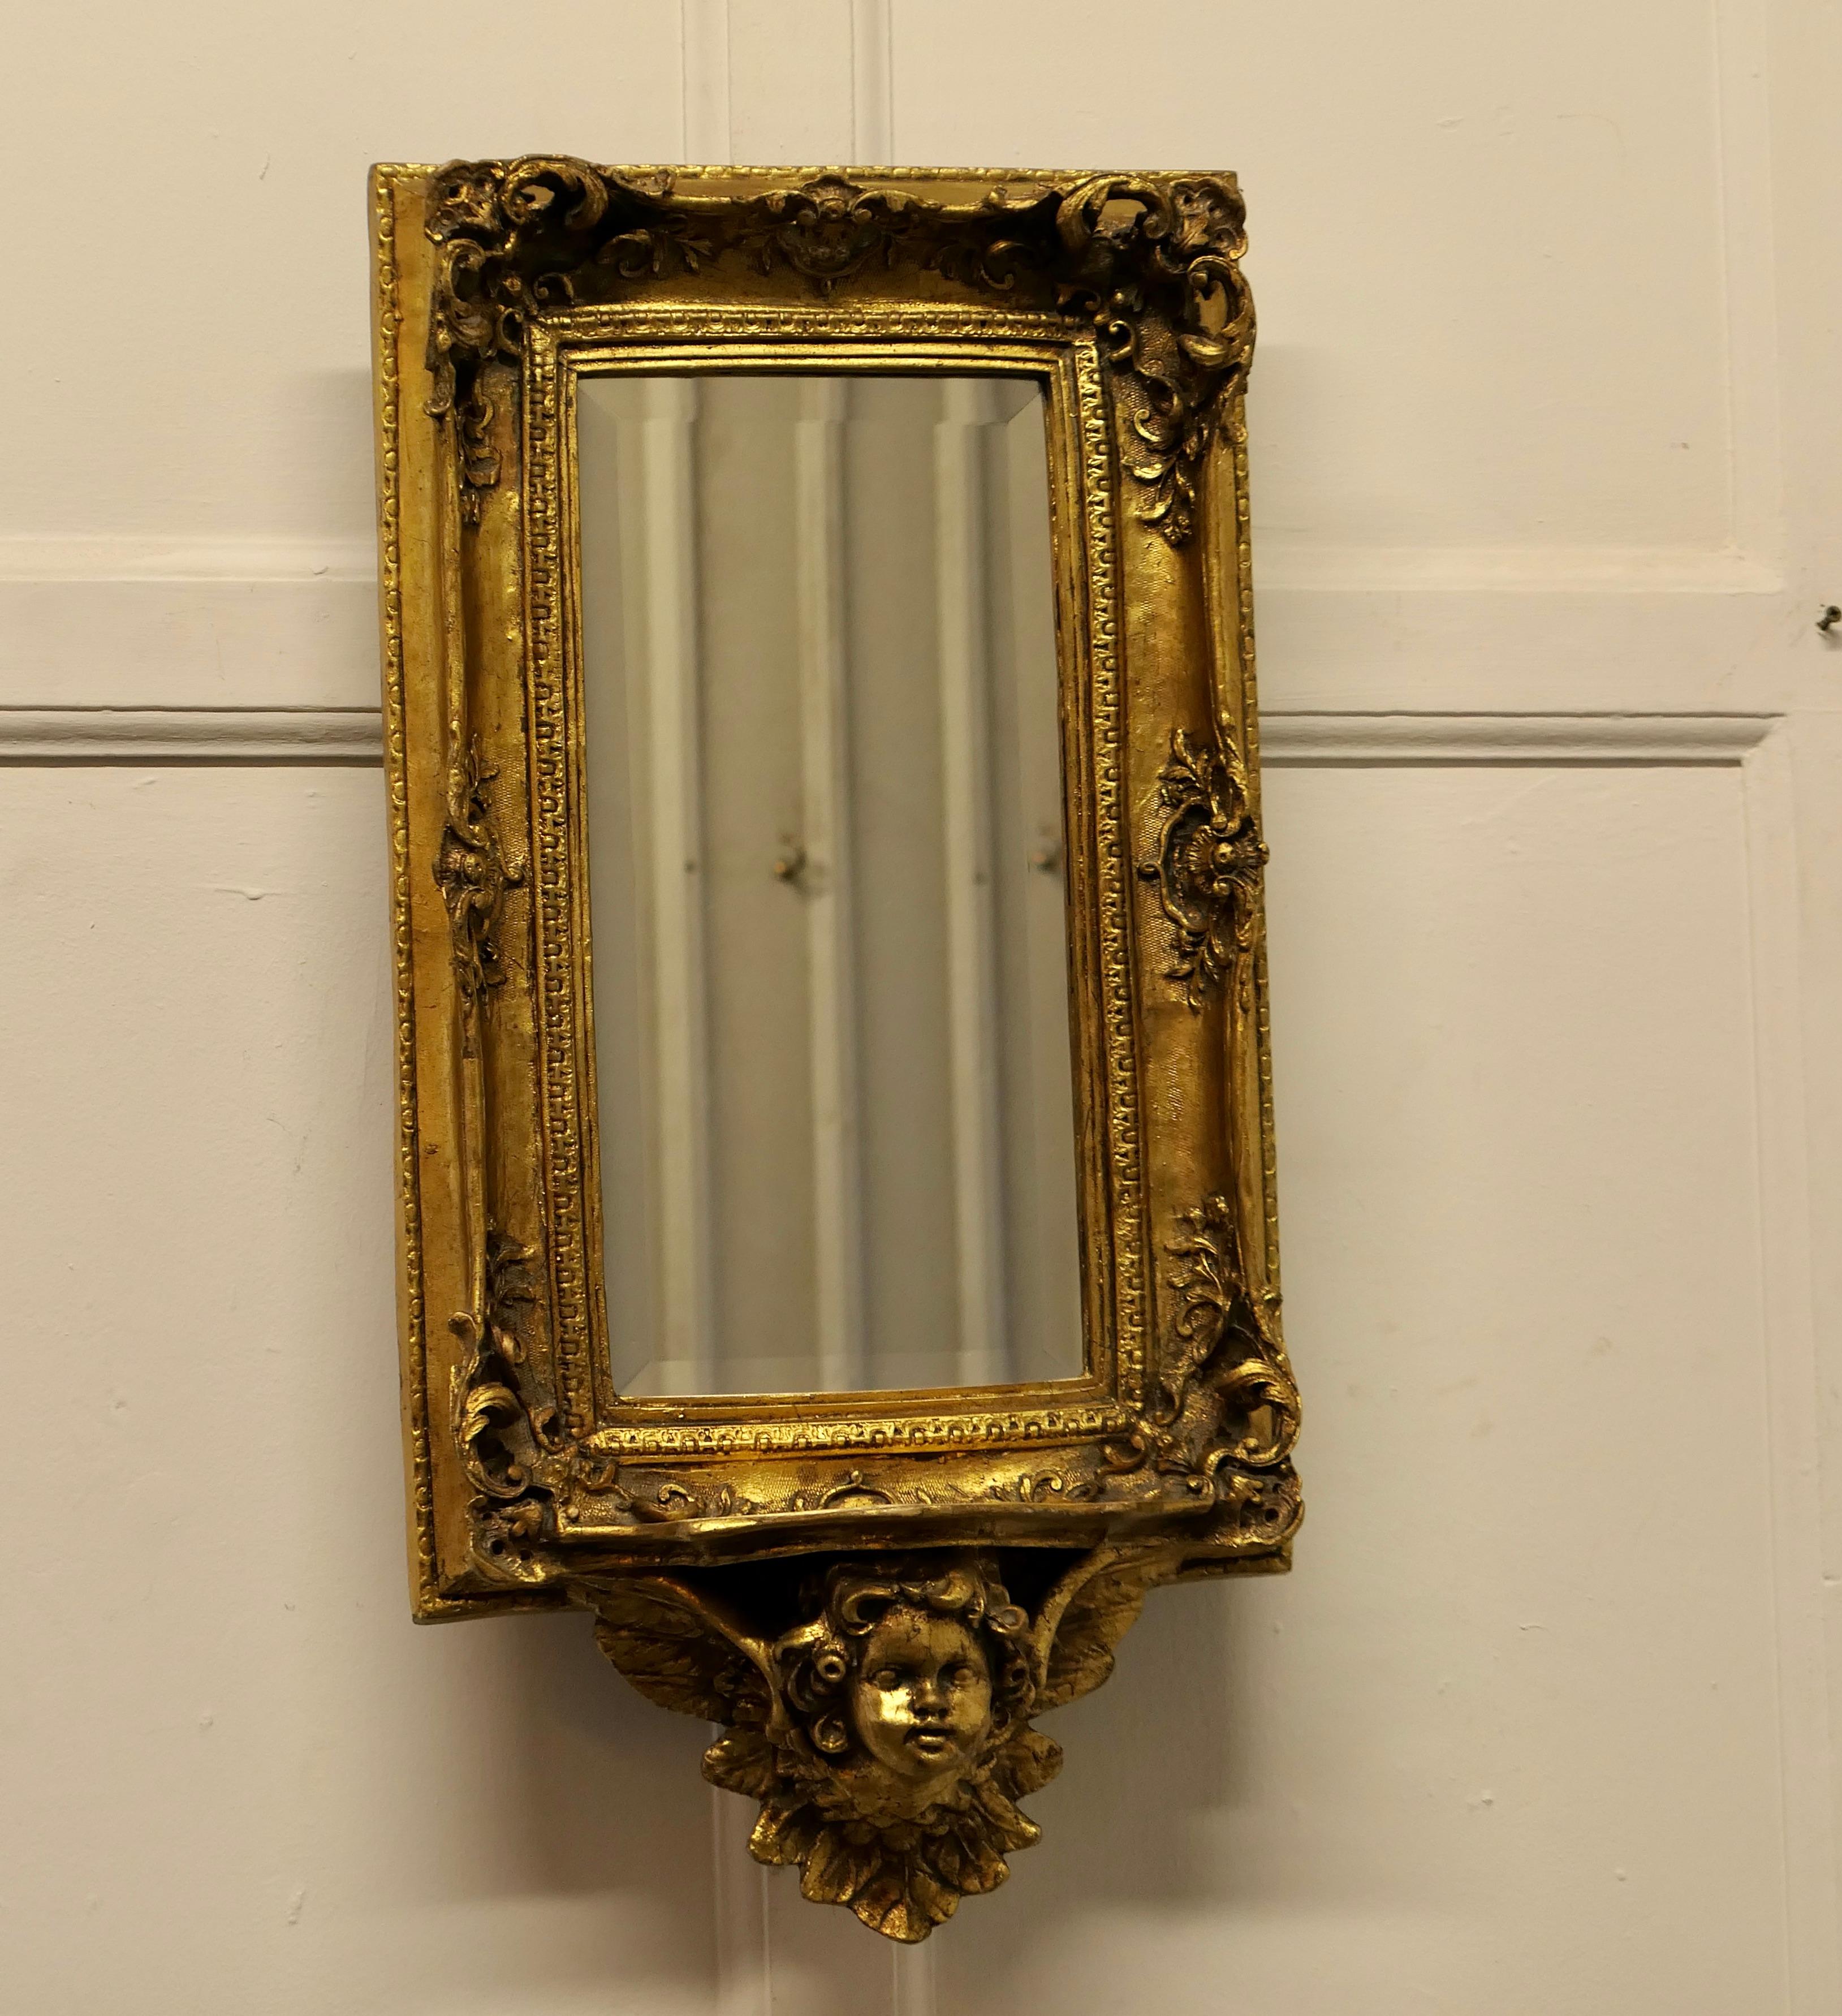 Vergoldeter Wandspiegel im Rokoko-Stil mit Putten und Regalhalterung

Der Spiegel hat einen exquisiten vergoldeten Rahmen im Rokoko-Stil, er ist rechteckig und hat das Gesicht eines Puttenengels am Boden, der ein kleines Regal trägt. 
In gutem